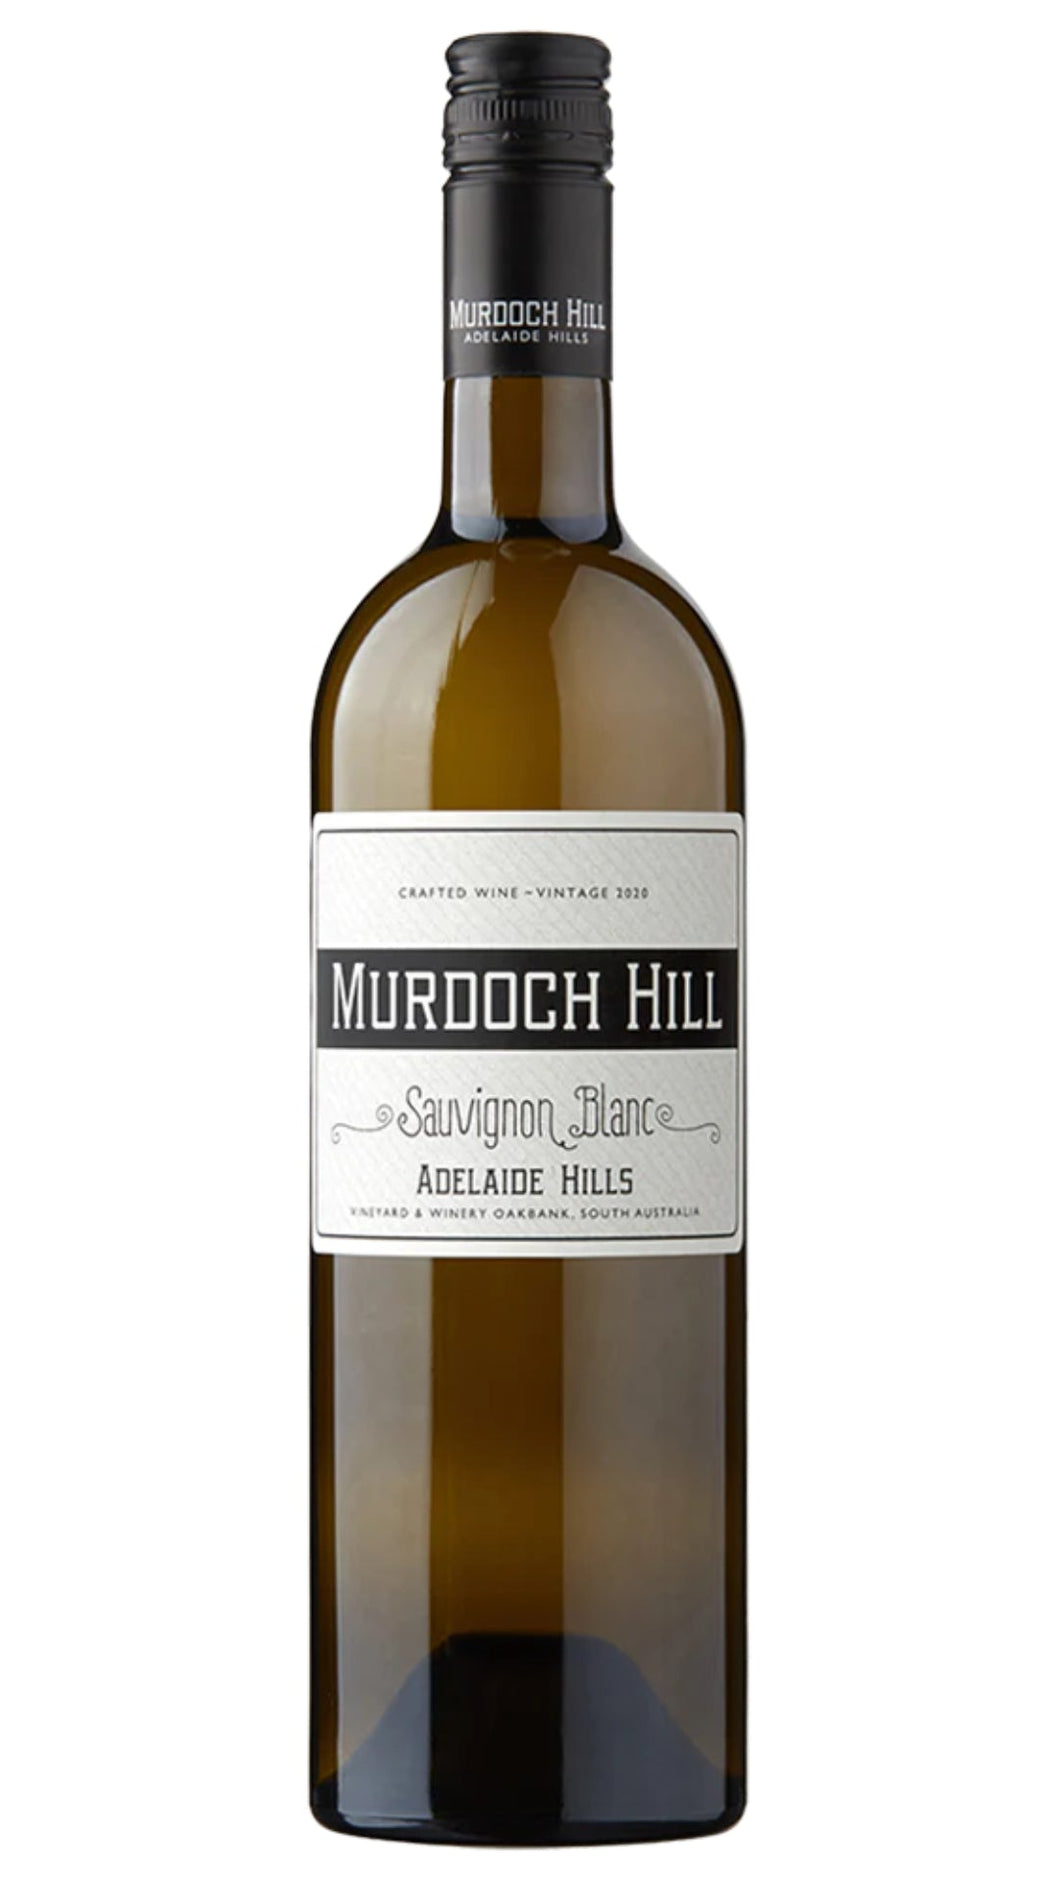 Murdoch Hill Sauvignon Blanc